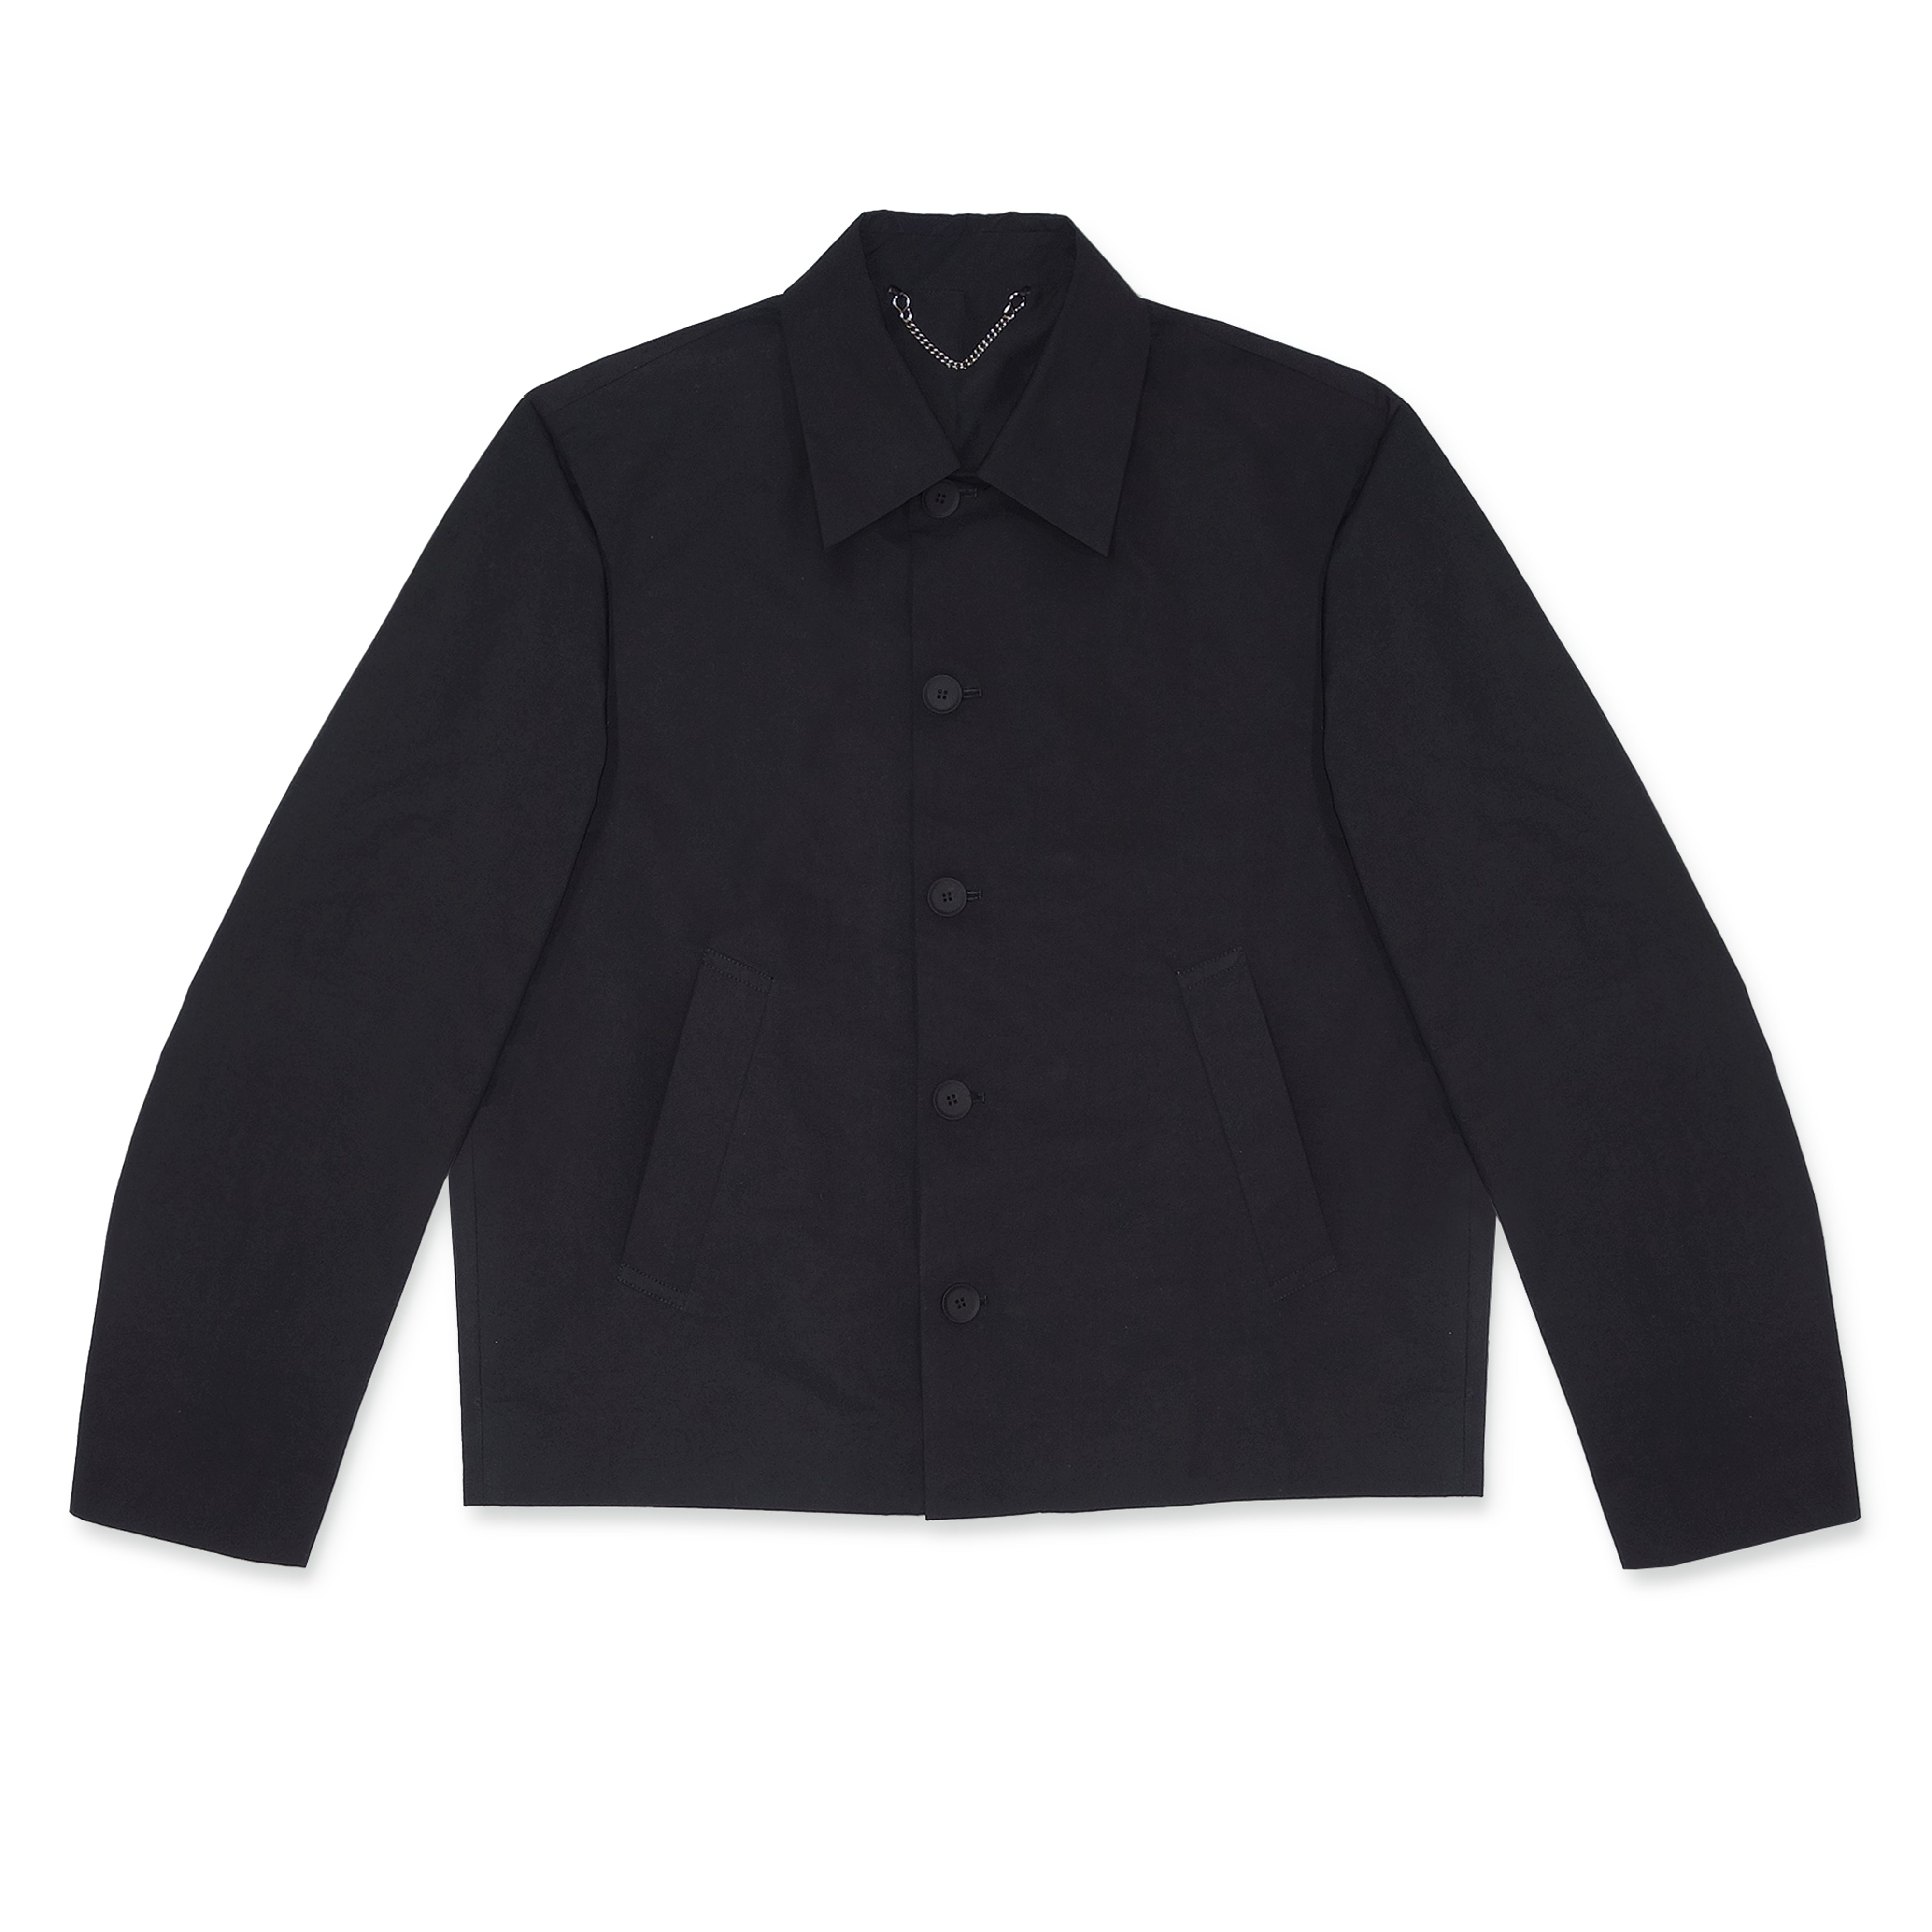 Craig Green - Men's Uniform Jacket - (Black)